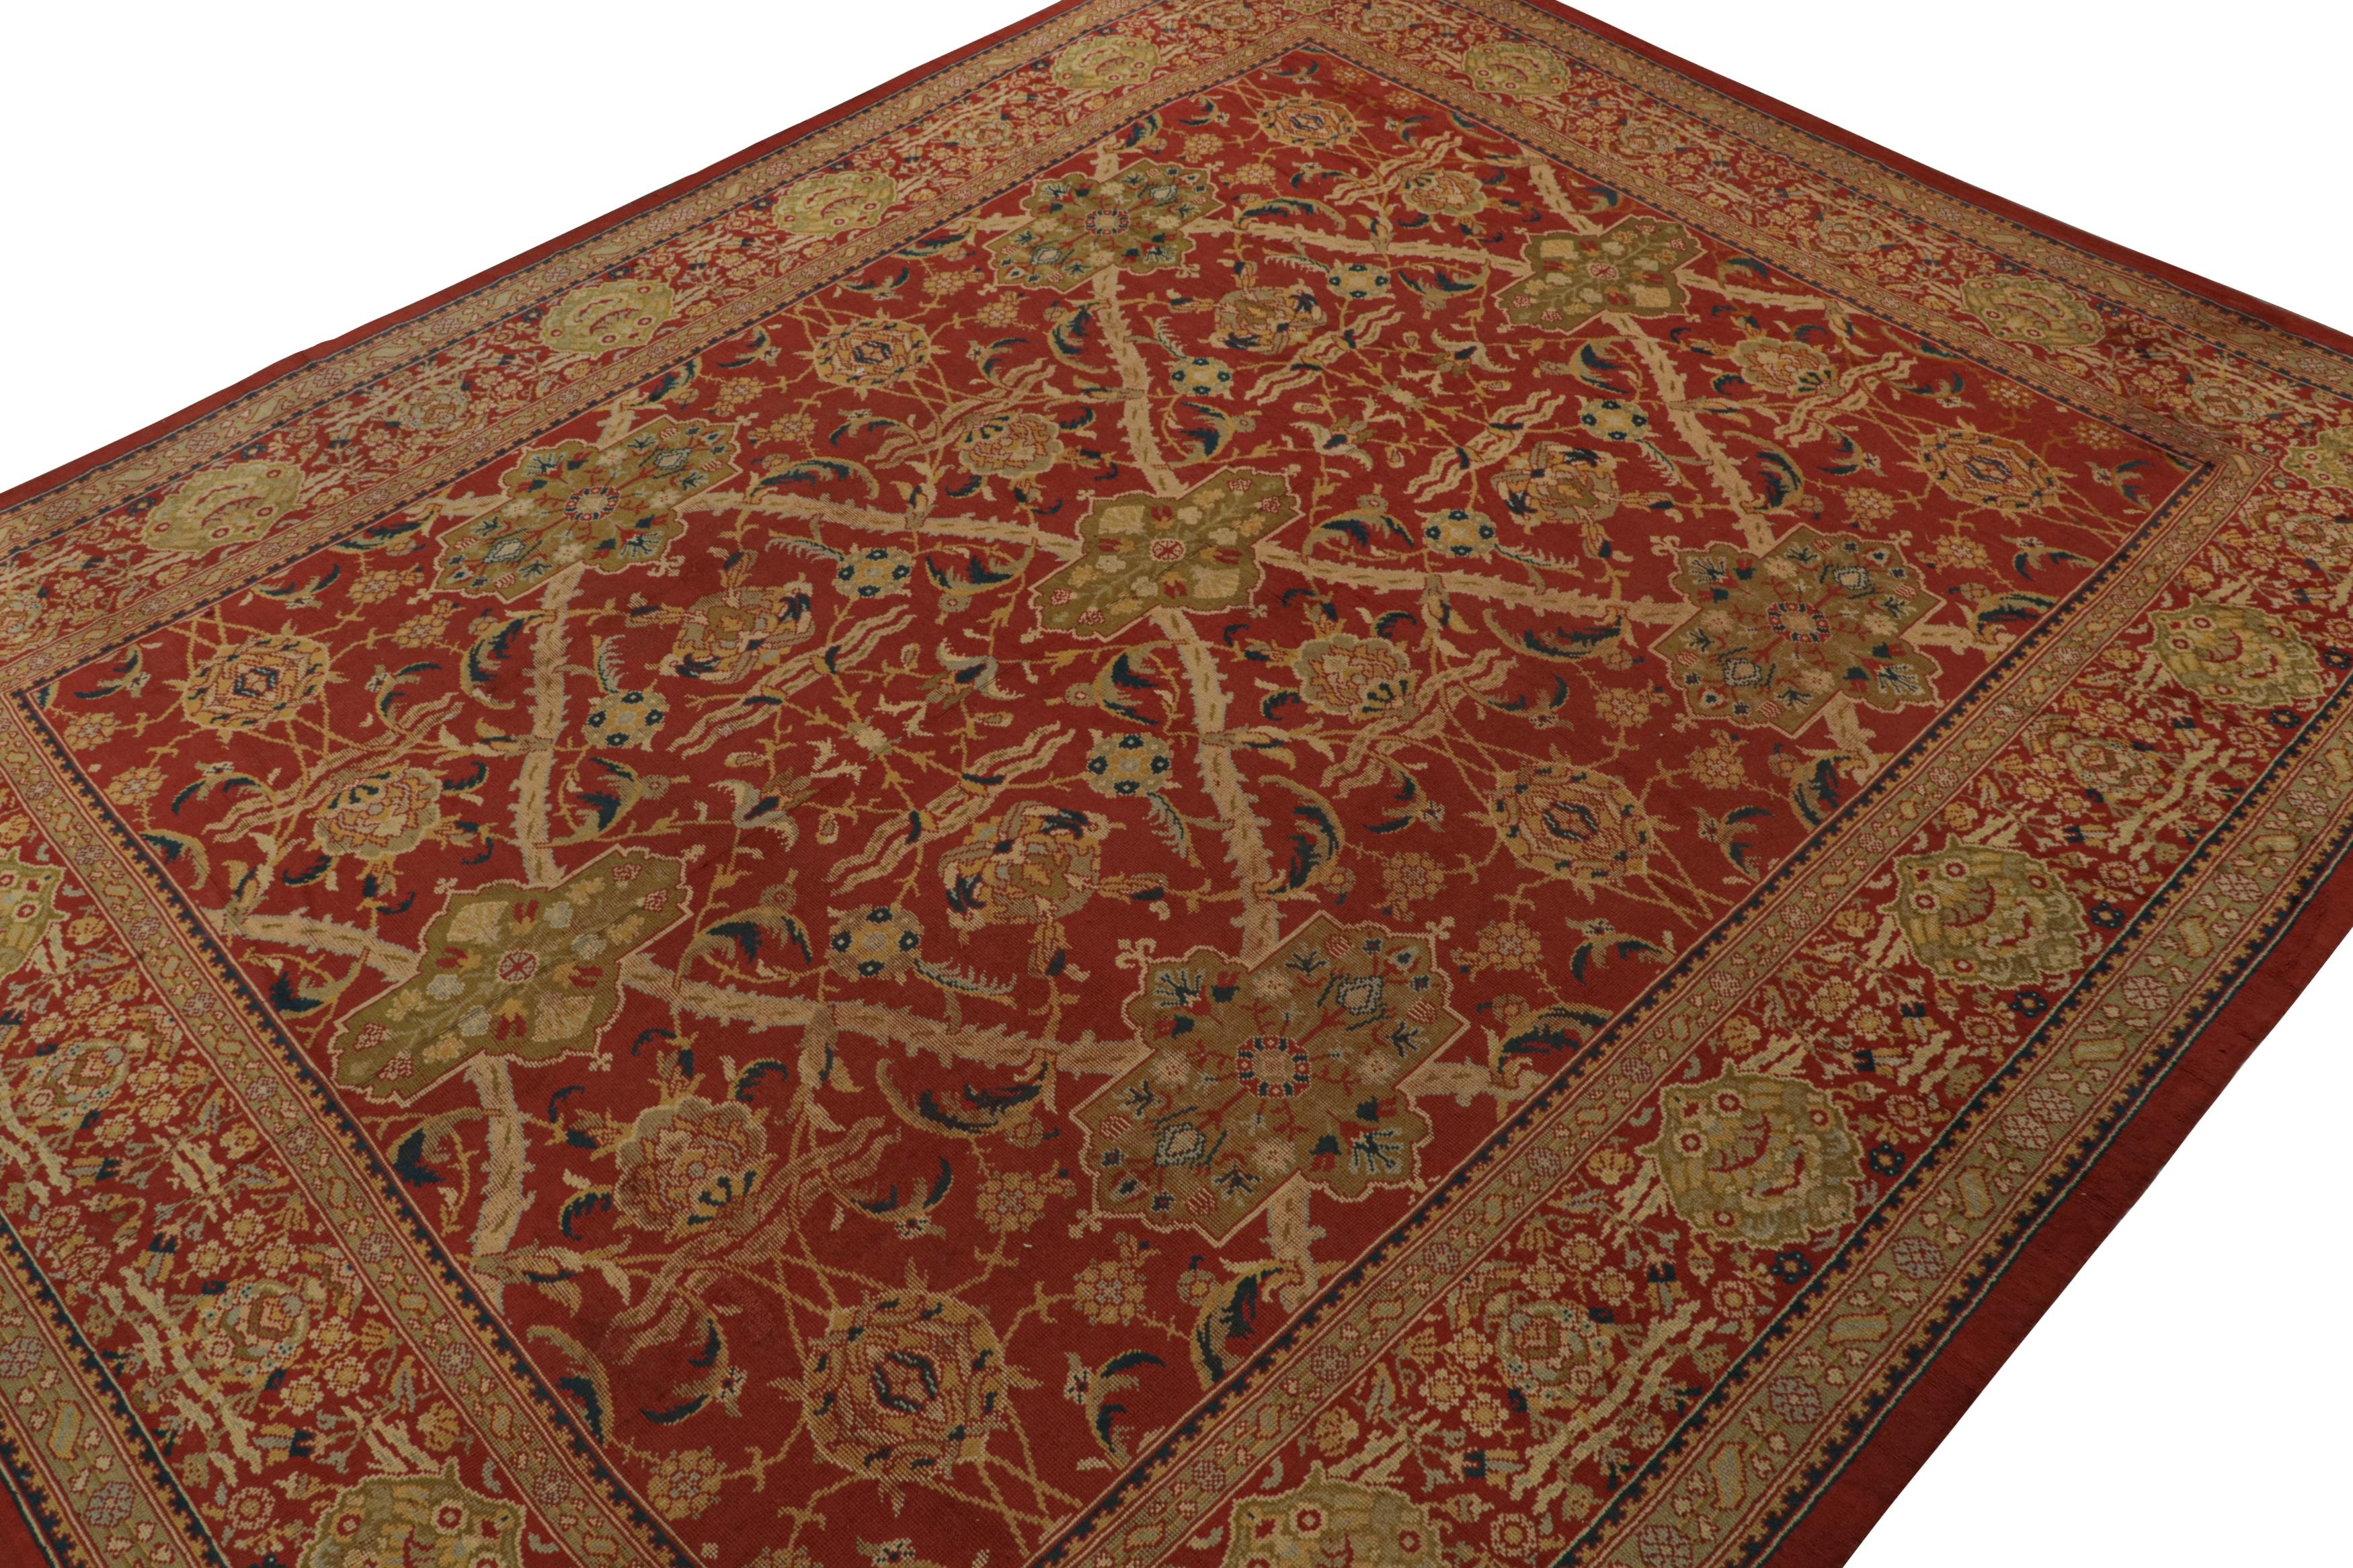 Dieser 14x17 große antike Axminster-Teppich aus England, handgeknüpft aus Wolle um 1860-1870, ist ein seltenes Stück aus der Zeit vor dem Kunsthandwerk.  

Über das Design:

Inspiriert von Sultanabad-Teppichen wie auch von anderen Werken, die der